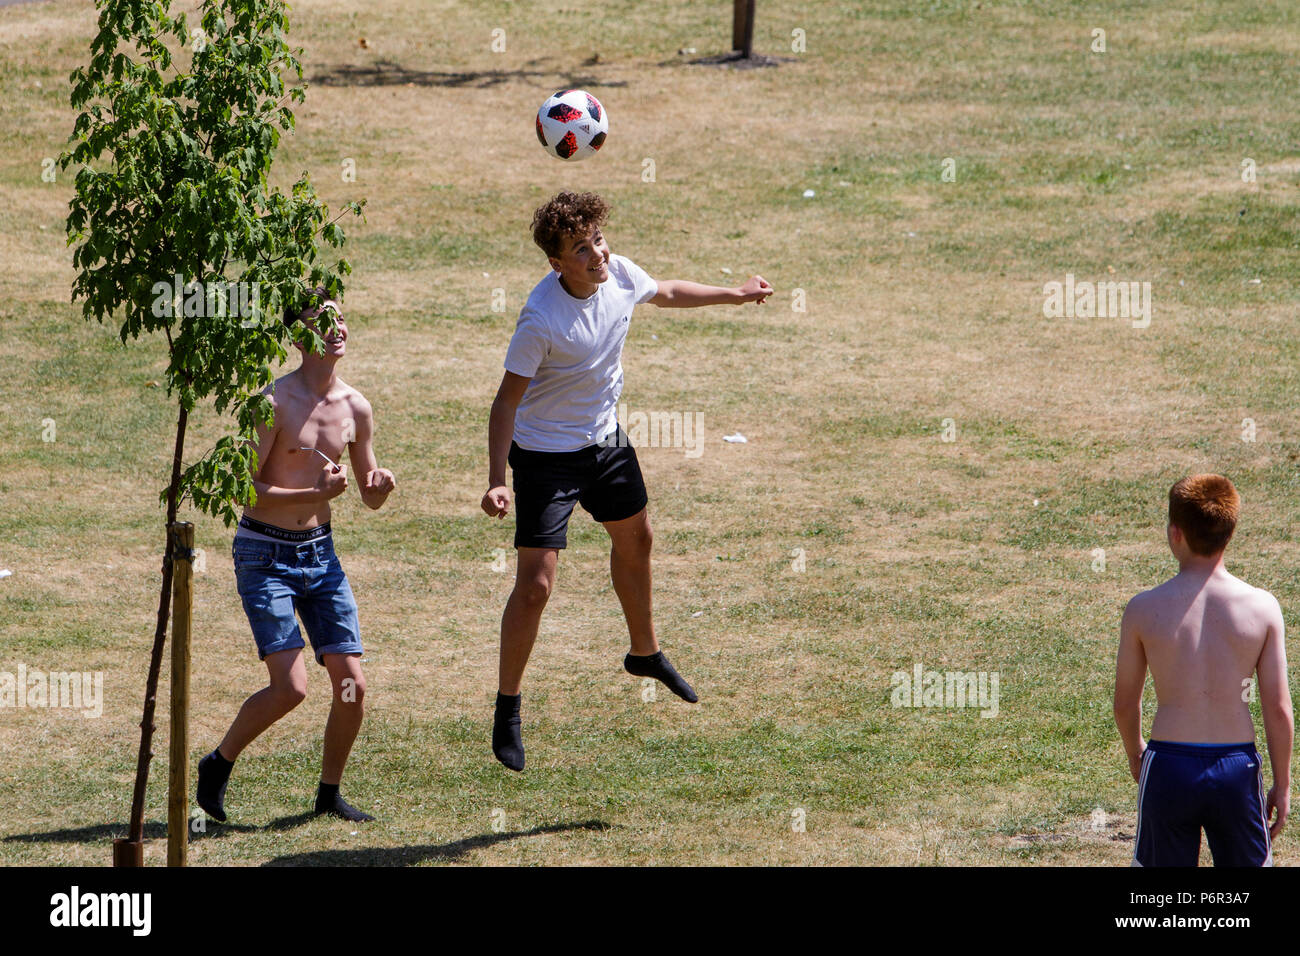 Badewanne, Großbritannien, 2. Juli 2018. Da das Vereinigte Königreich genießt einen sehr warmen und sonnigen Tag, eine Gruppe junger Männer abgebildet sind, da sie einen Fußball um in Parade gardens Kick, Meteorologen sagen voraus, dass das warme Wetter weiterhin gut in der nächsten Woche. Stockfoto